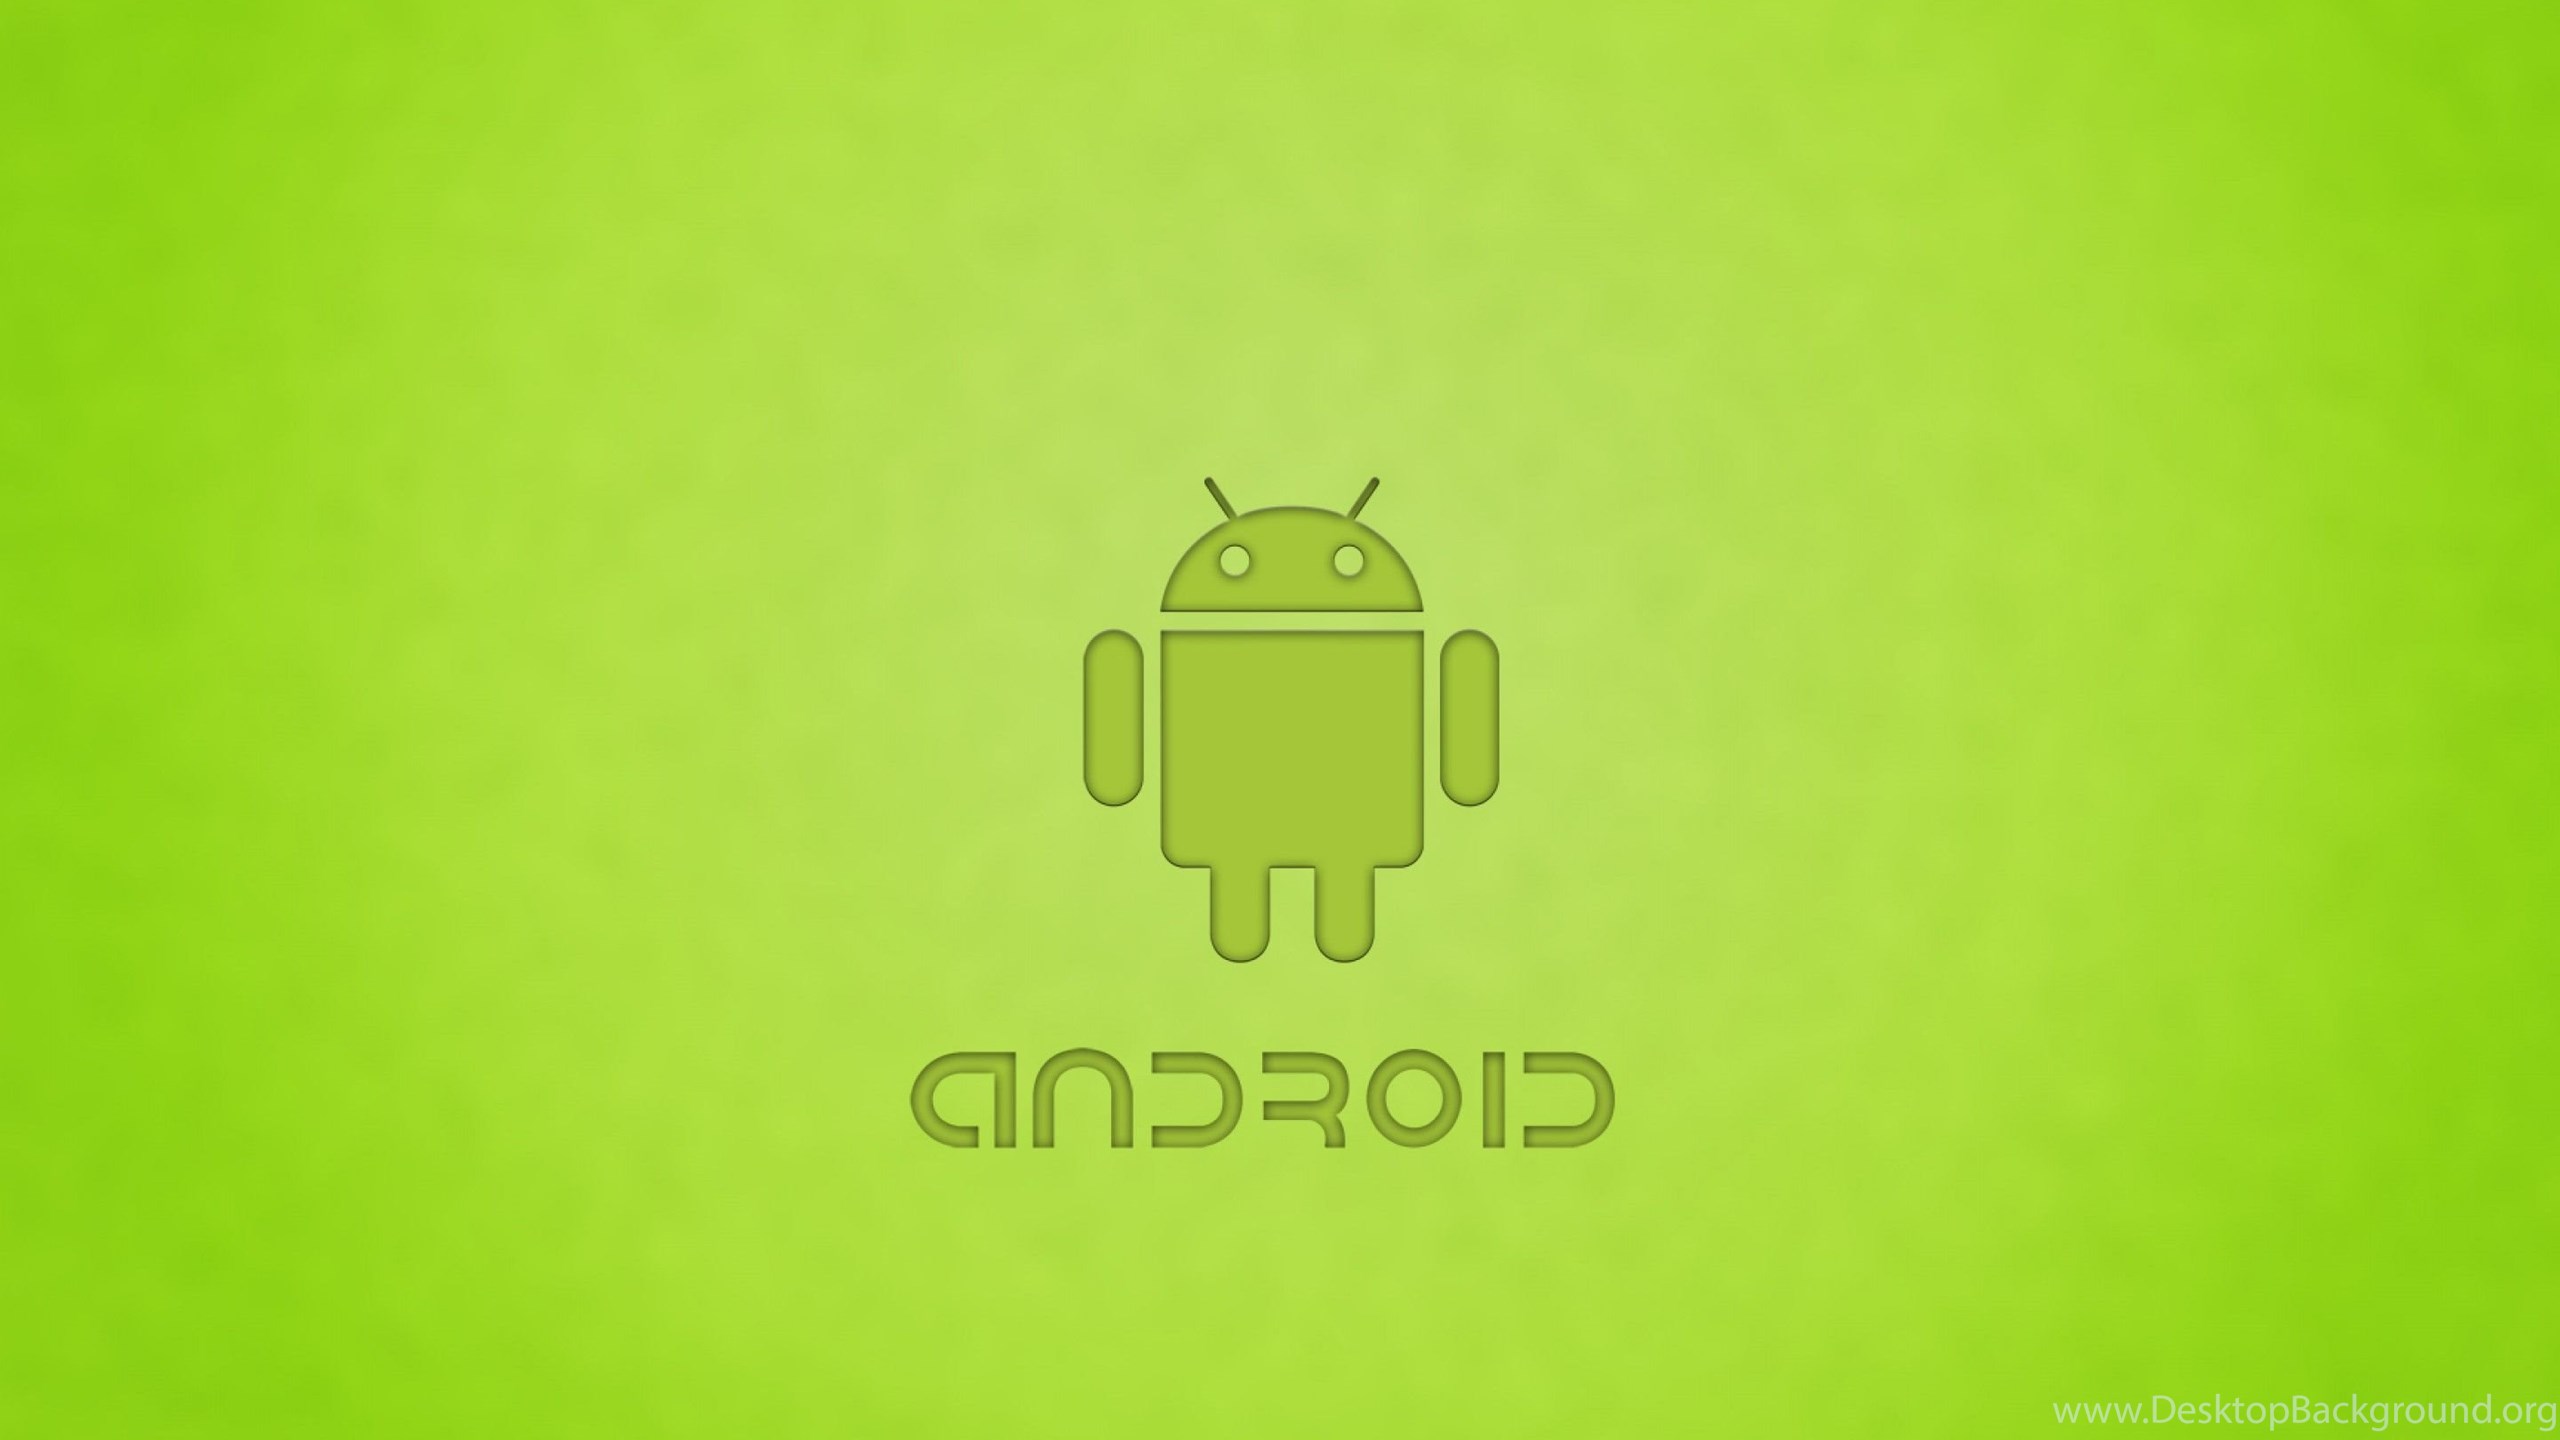 Андроид удивительная. Логотип андроид. Android fact. Facts about Android.